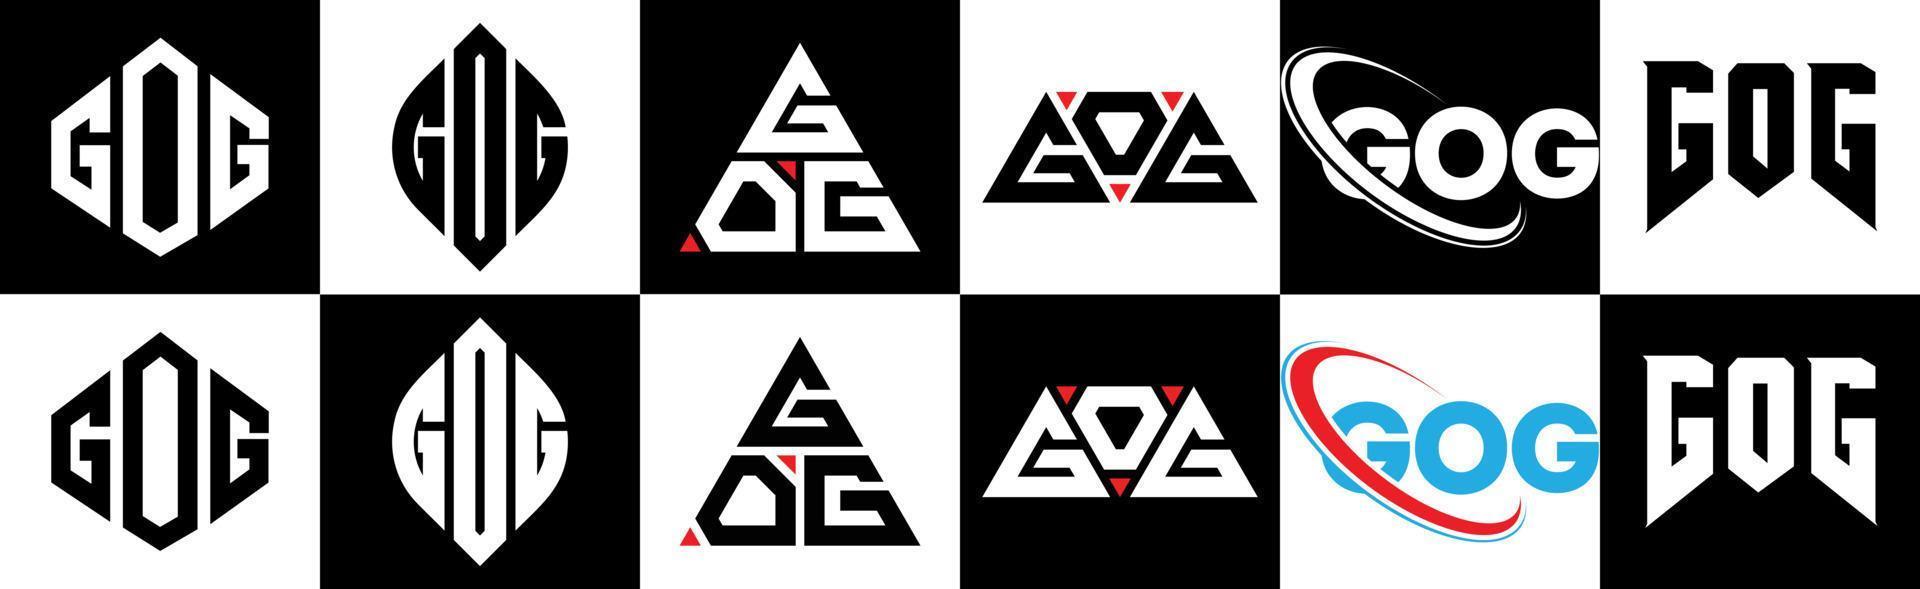 création de logo de lettre gog en six styles. gog polygone, cercle, triangle, hexagone, style plat et simple avec logo de lettre de variation de couleur noir et blanc dans un plan de travail. gog logo minimaliste et classique vecteur